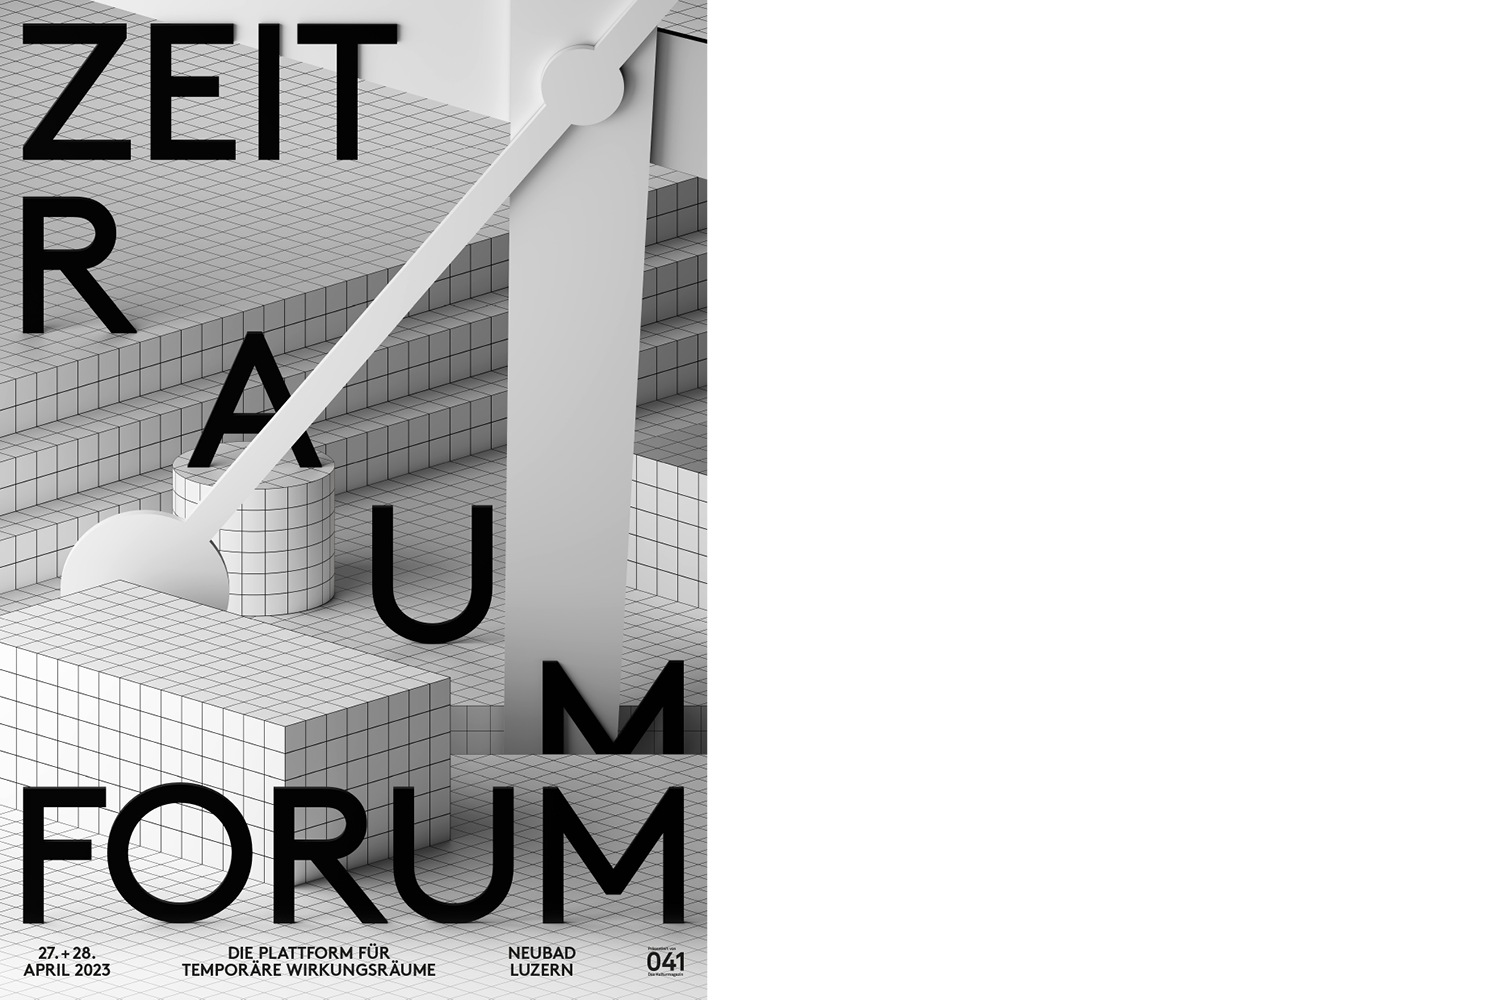 Plakat für das Zeit Raum Forum im Neubad Luzern. Darauf ist ein komplett gefliester Raum zu sehen, indem ein grosser Uhrzeiger und die Worte Zeit, Raum, Forum stehen.